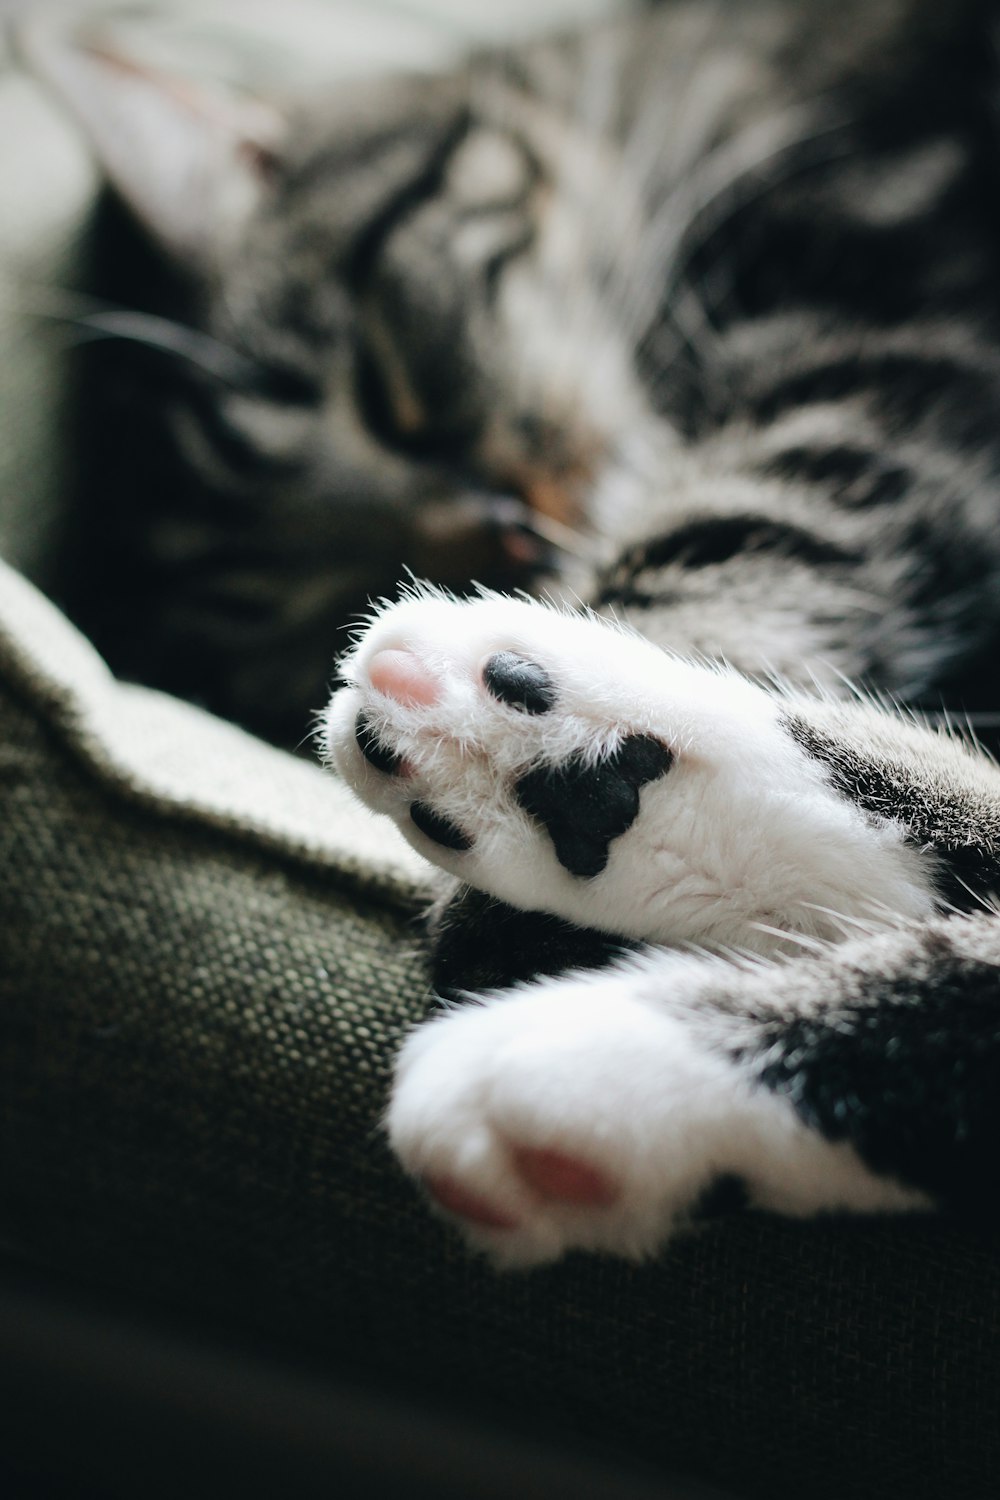 fotografia ravvicinata della zampa di gatto tabby bianco e nero